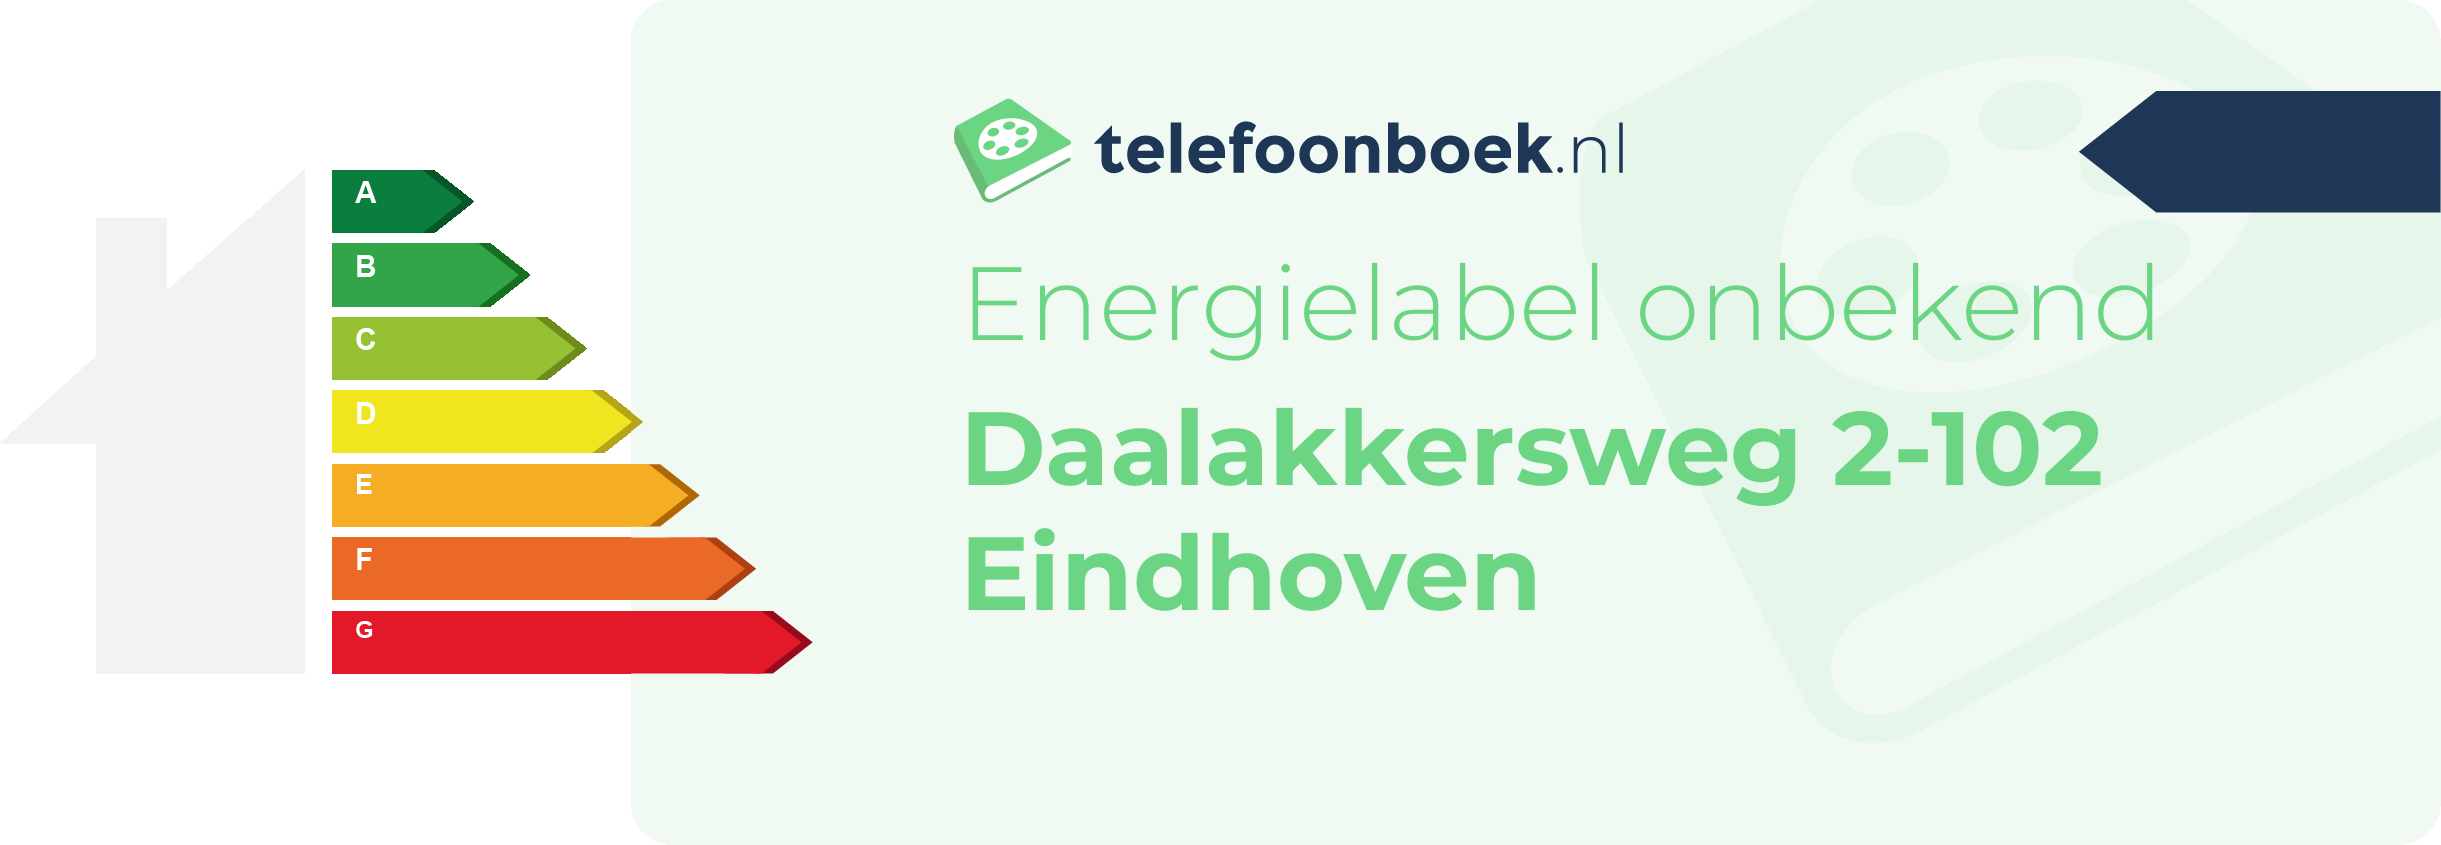 Energielabel Daalakkersweg 2-102 Eindhoven